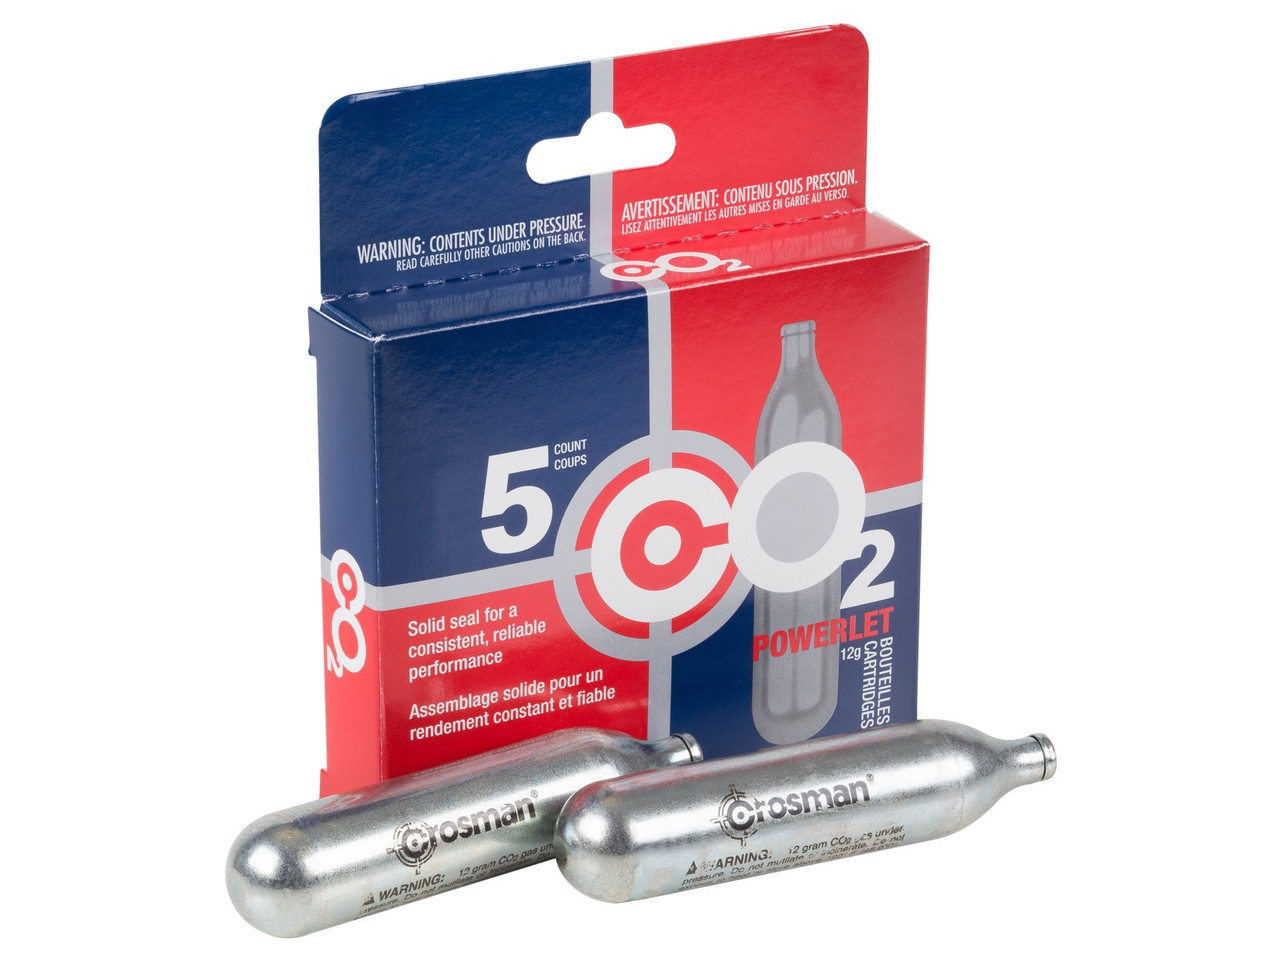 Crosman 12g Powerlet CO2 cartridges Standard Packaging 5 count ~ 